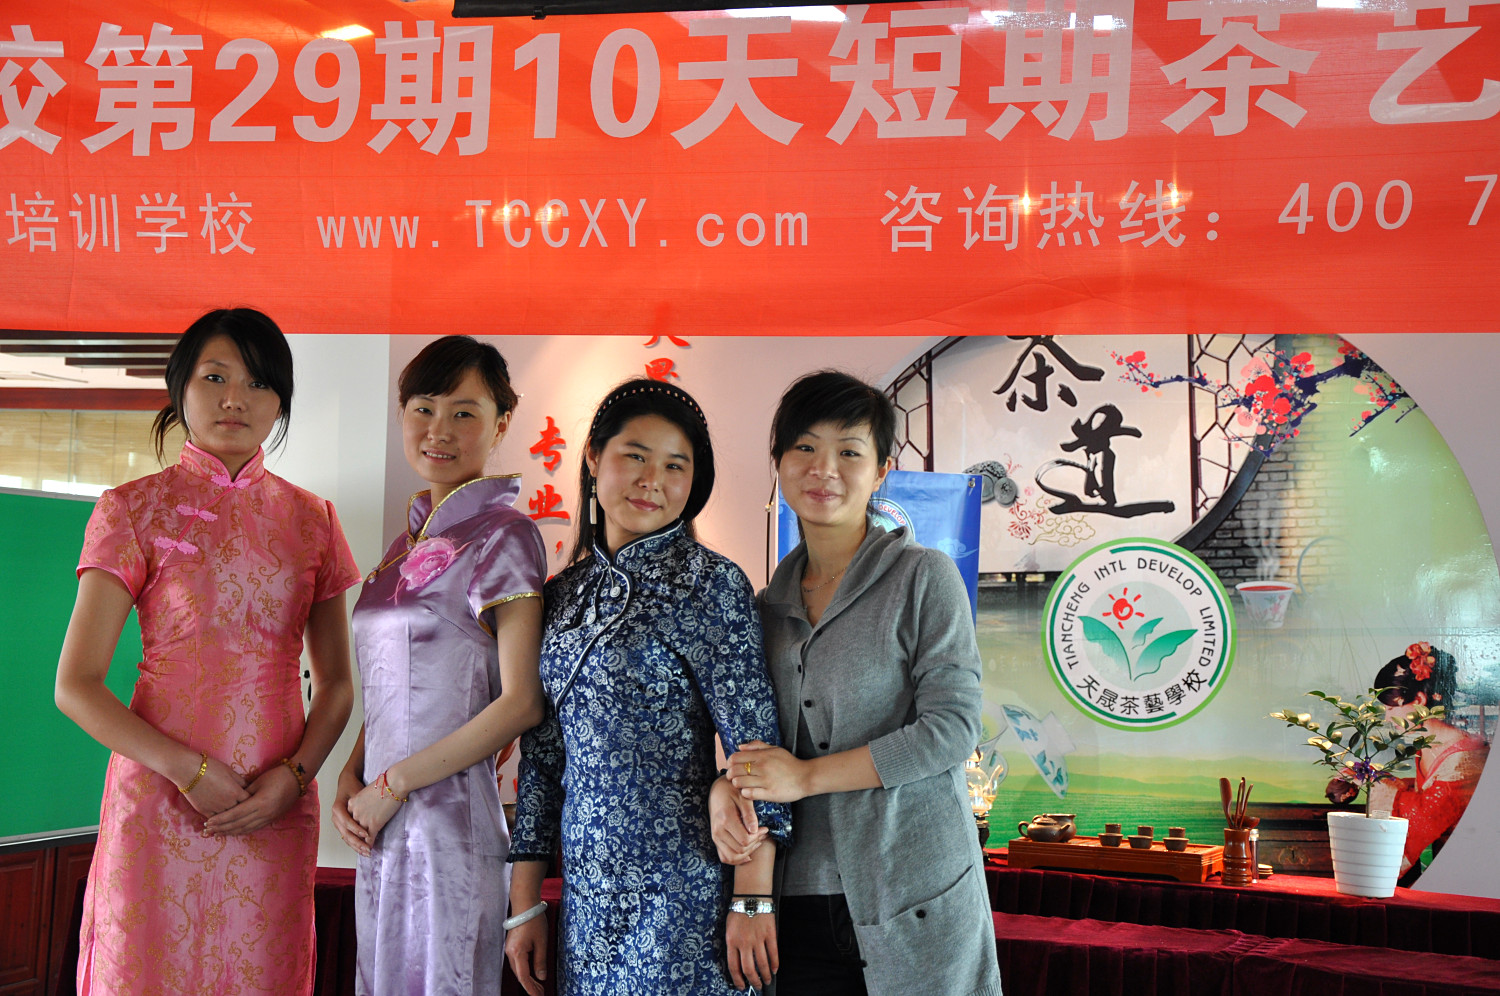 第29期天晟茶艺培训学校中国茶学系统培训班全体学员合照